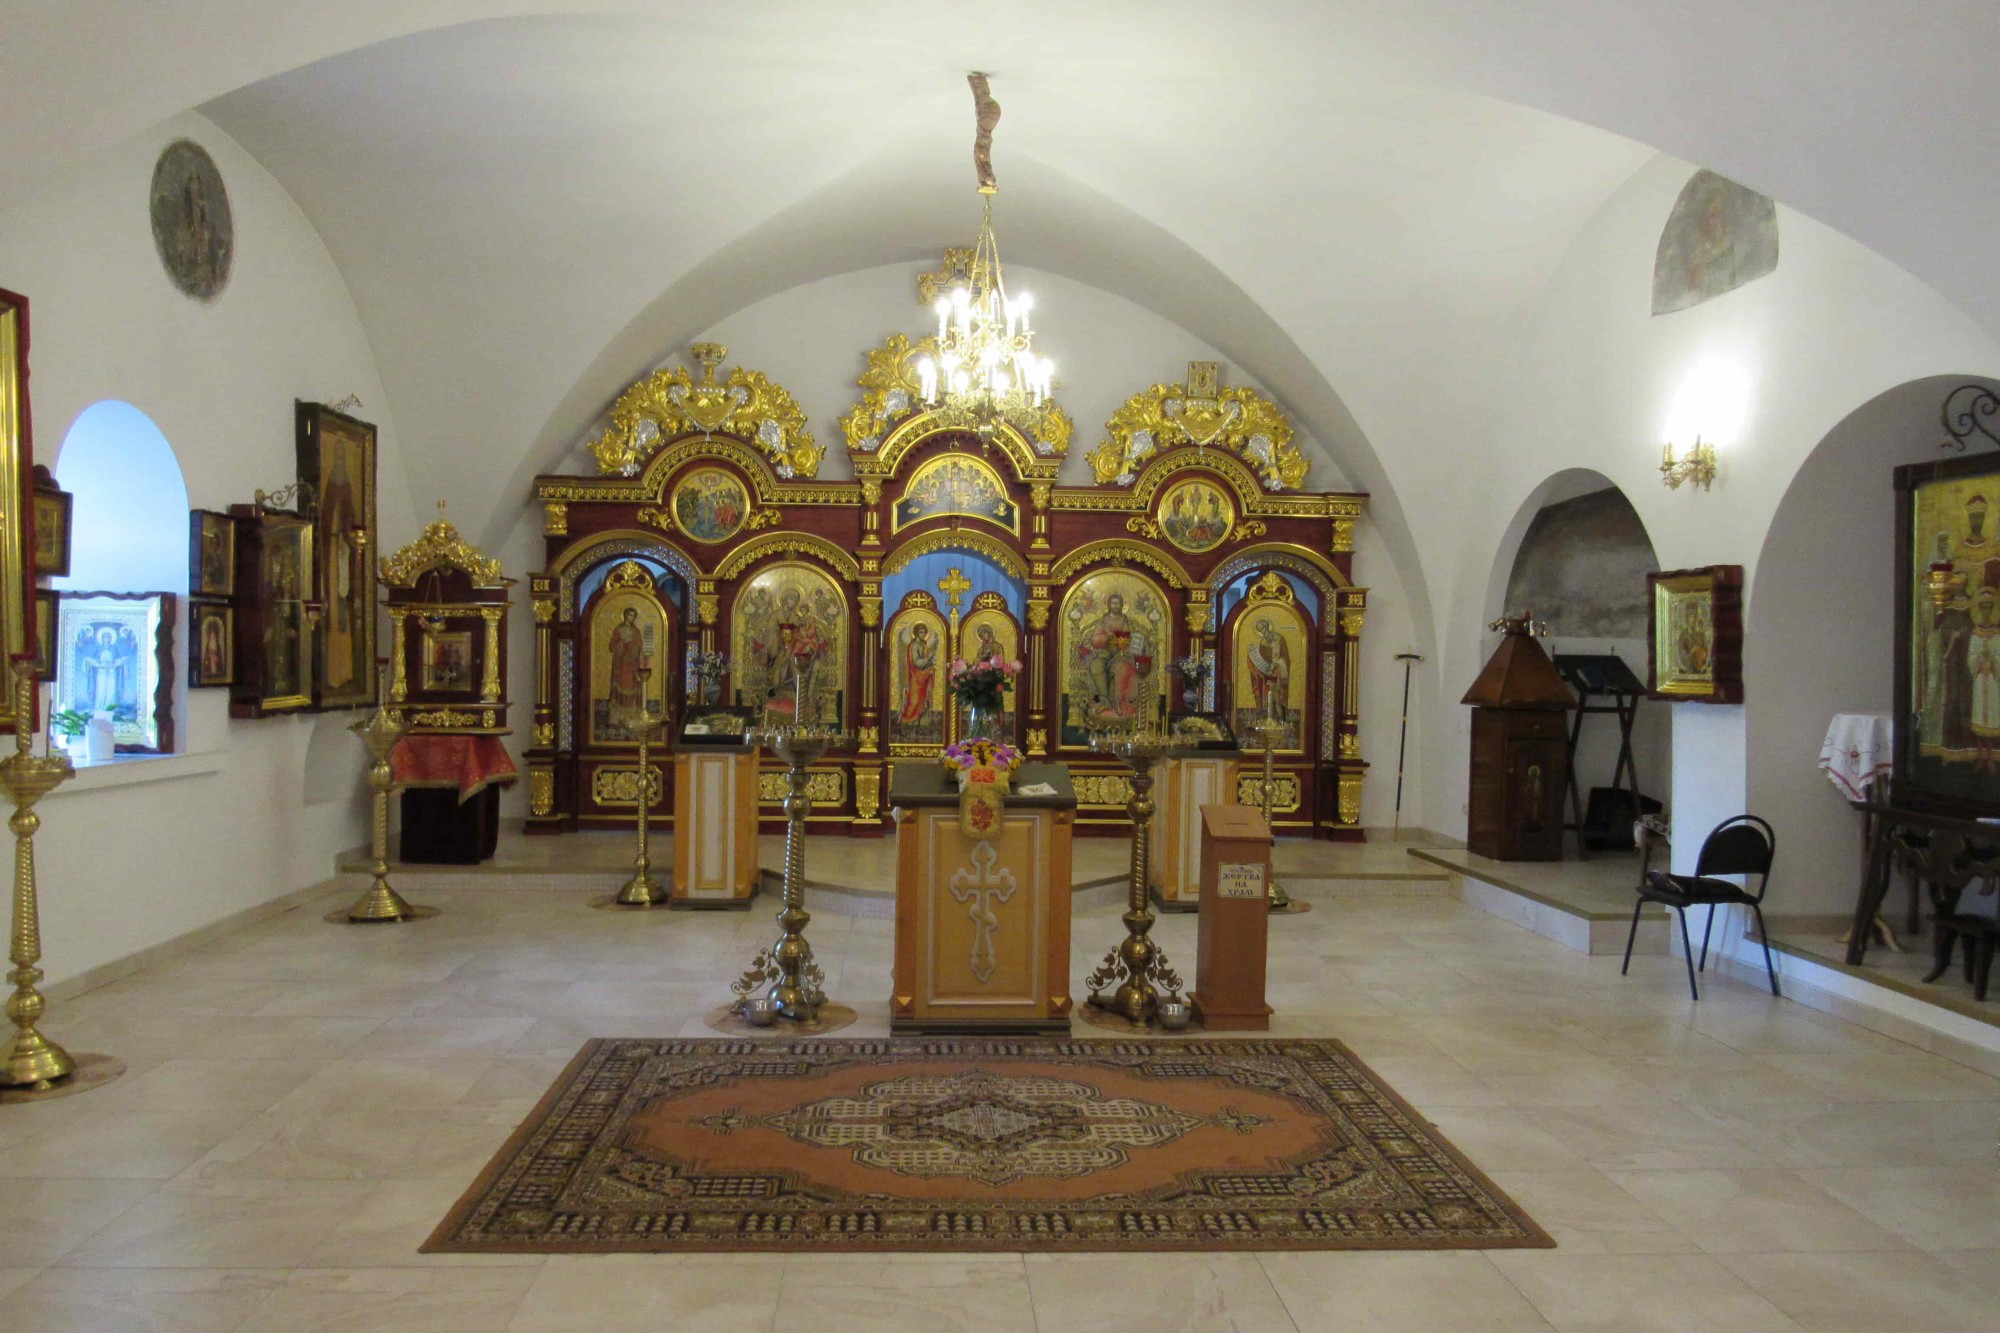 Сумщина. У Харлампіївській церкві Гамаліївського монастиря збереглися фрагменти розписів